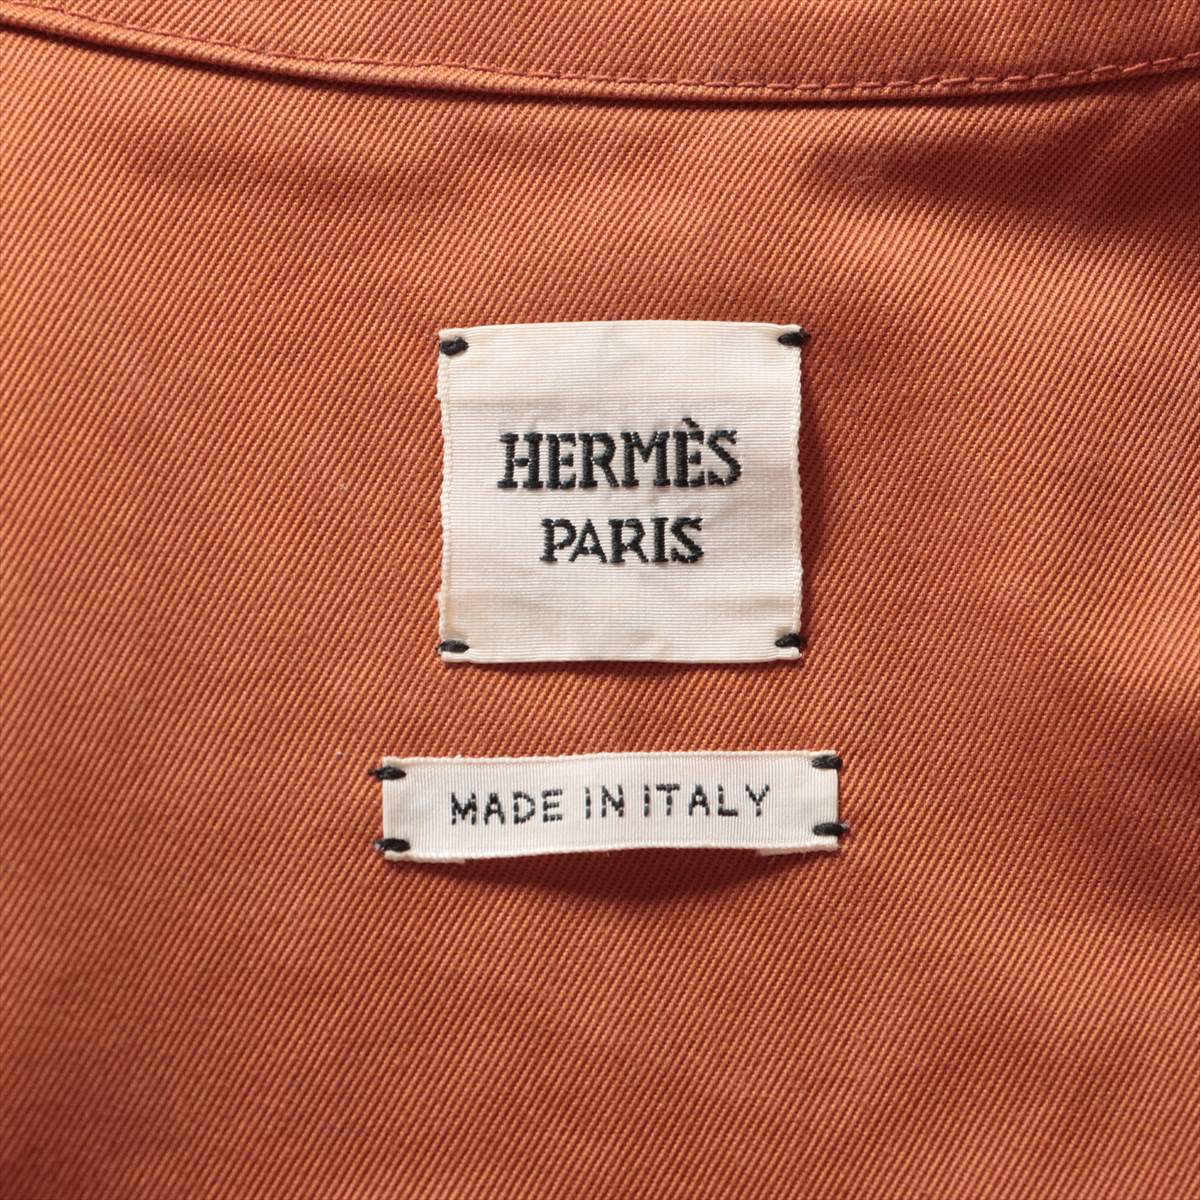 Hermès 20AW Cotton Jumpsuit 38 Ladies' Orange  06-7405 Serie Button